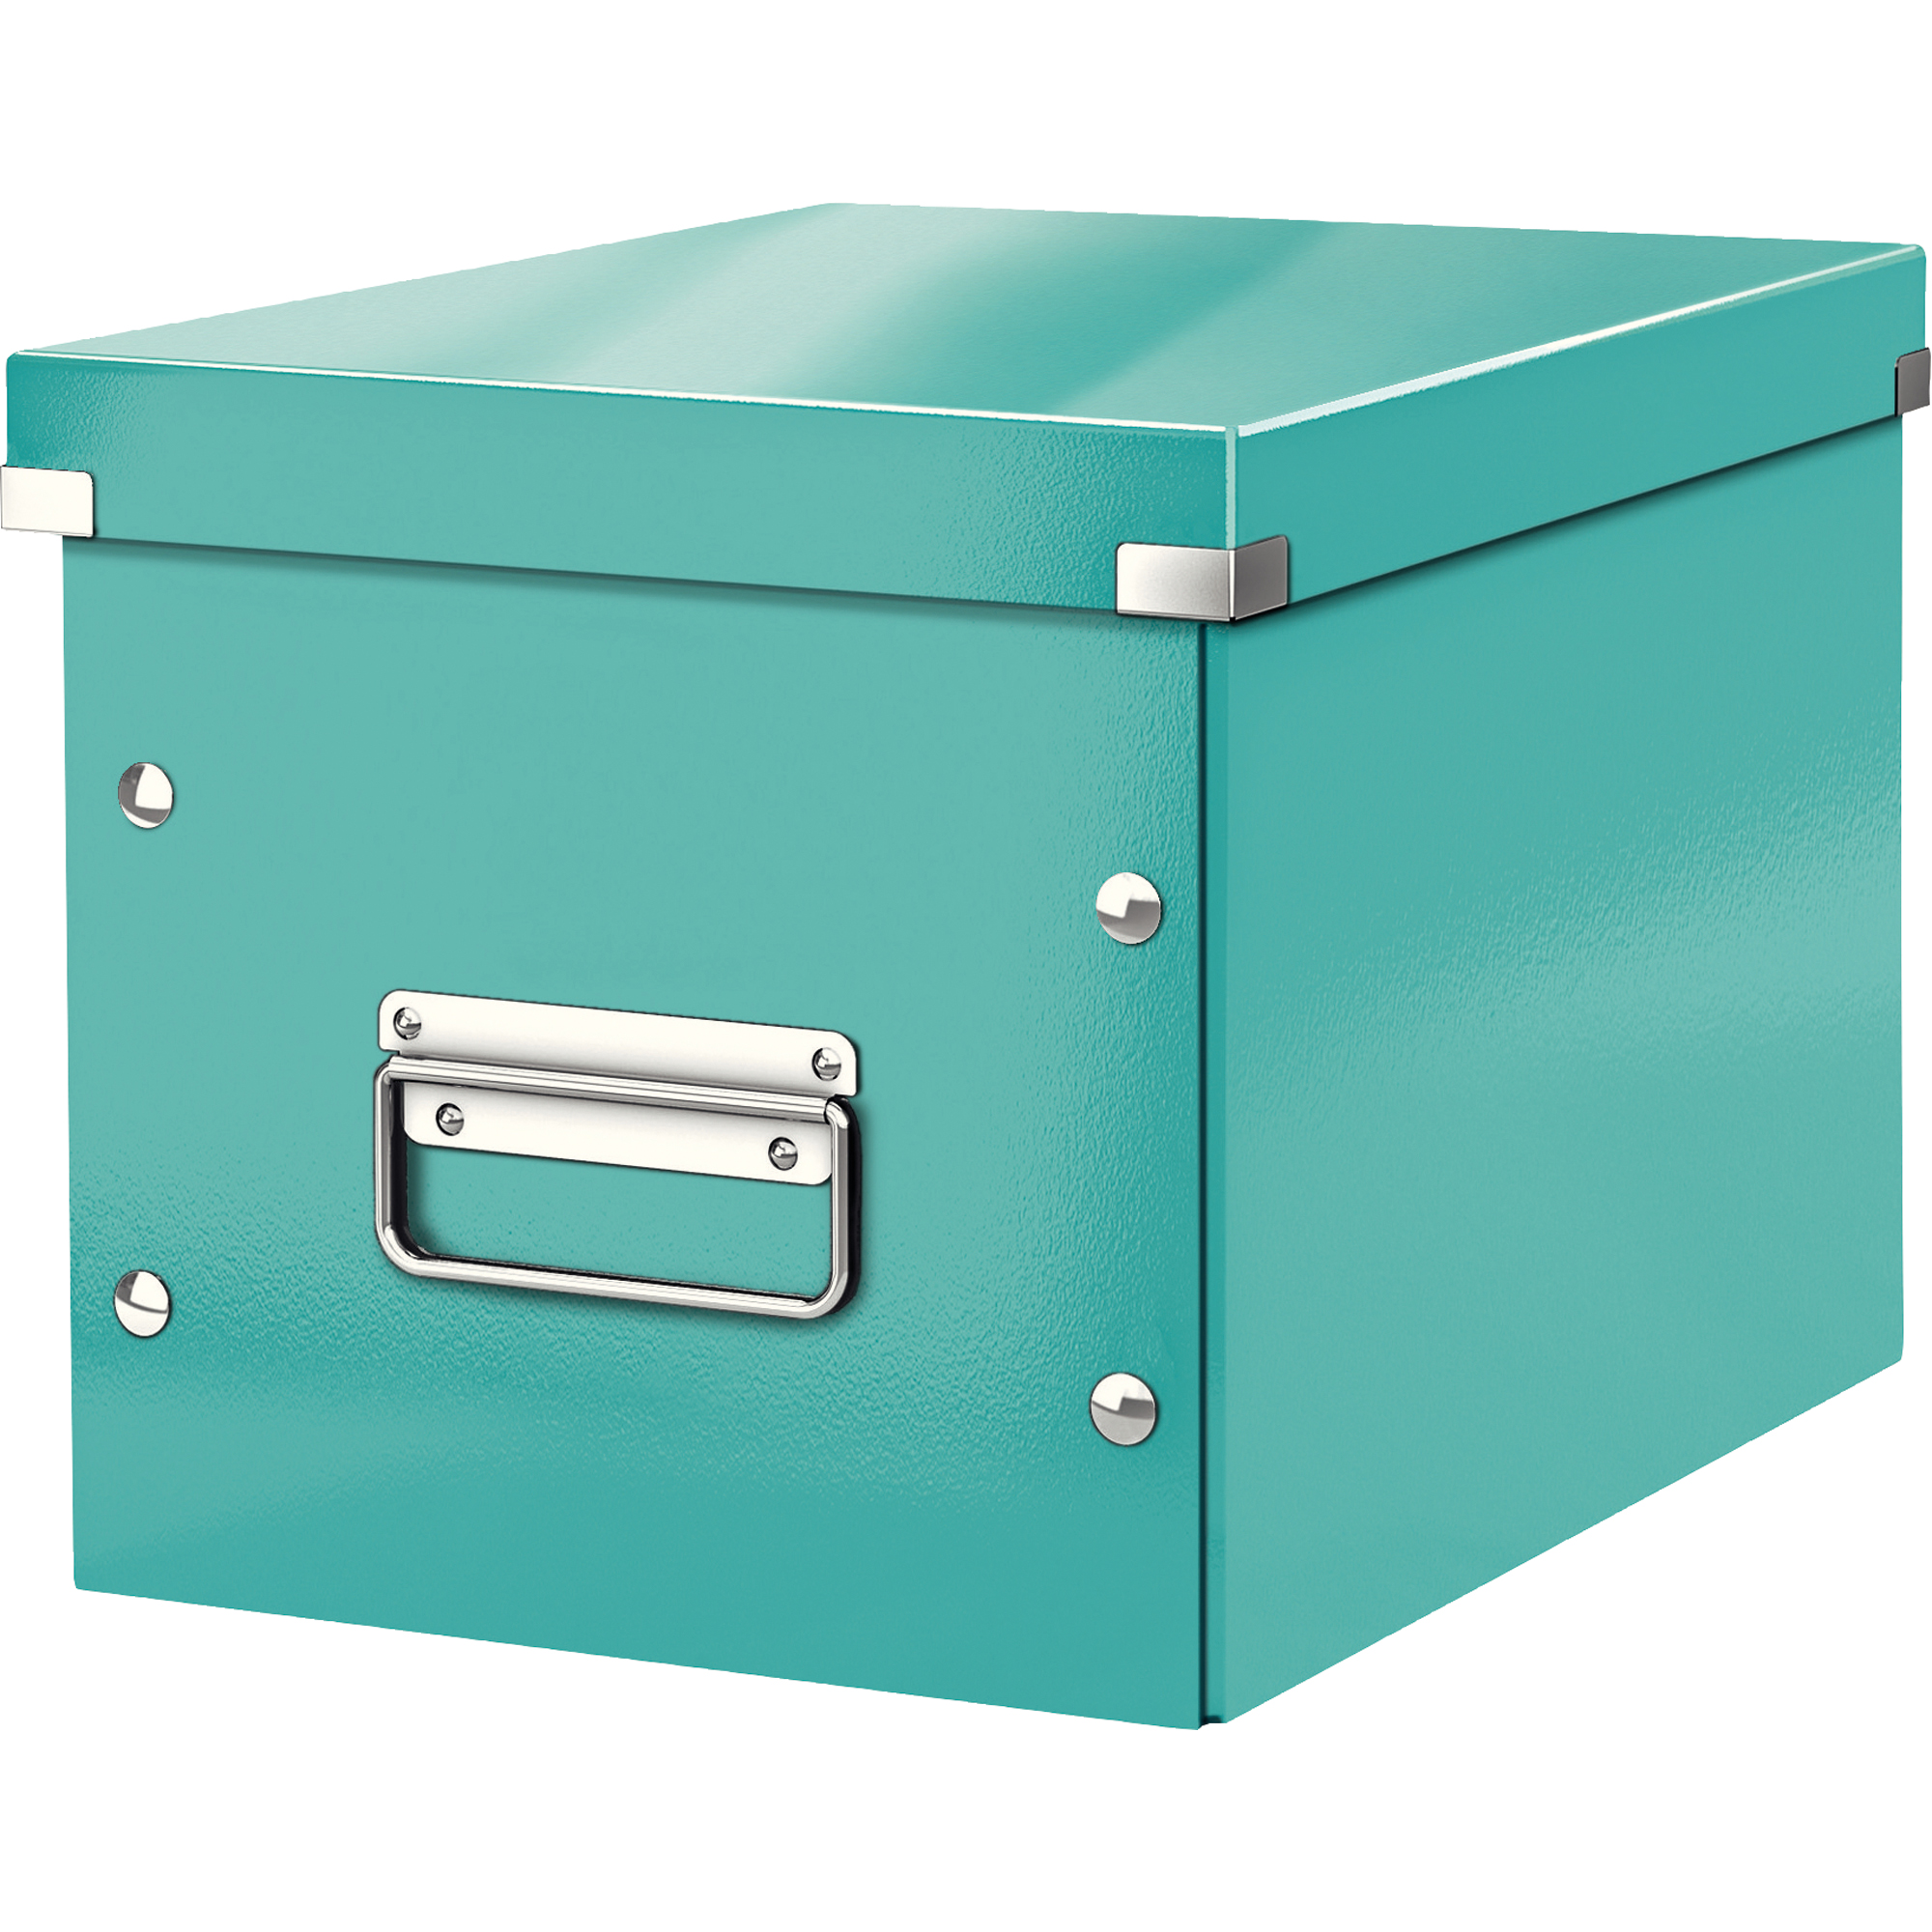 Leitz Archivbox Click & Store Cube 26 x 24 x 26 cm ohne Archivdruck eisblau